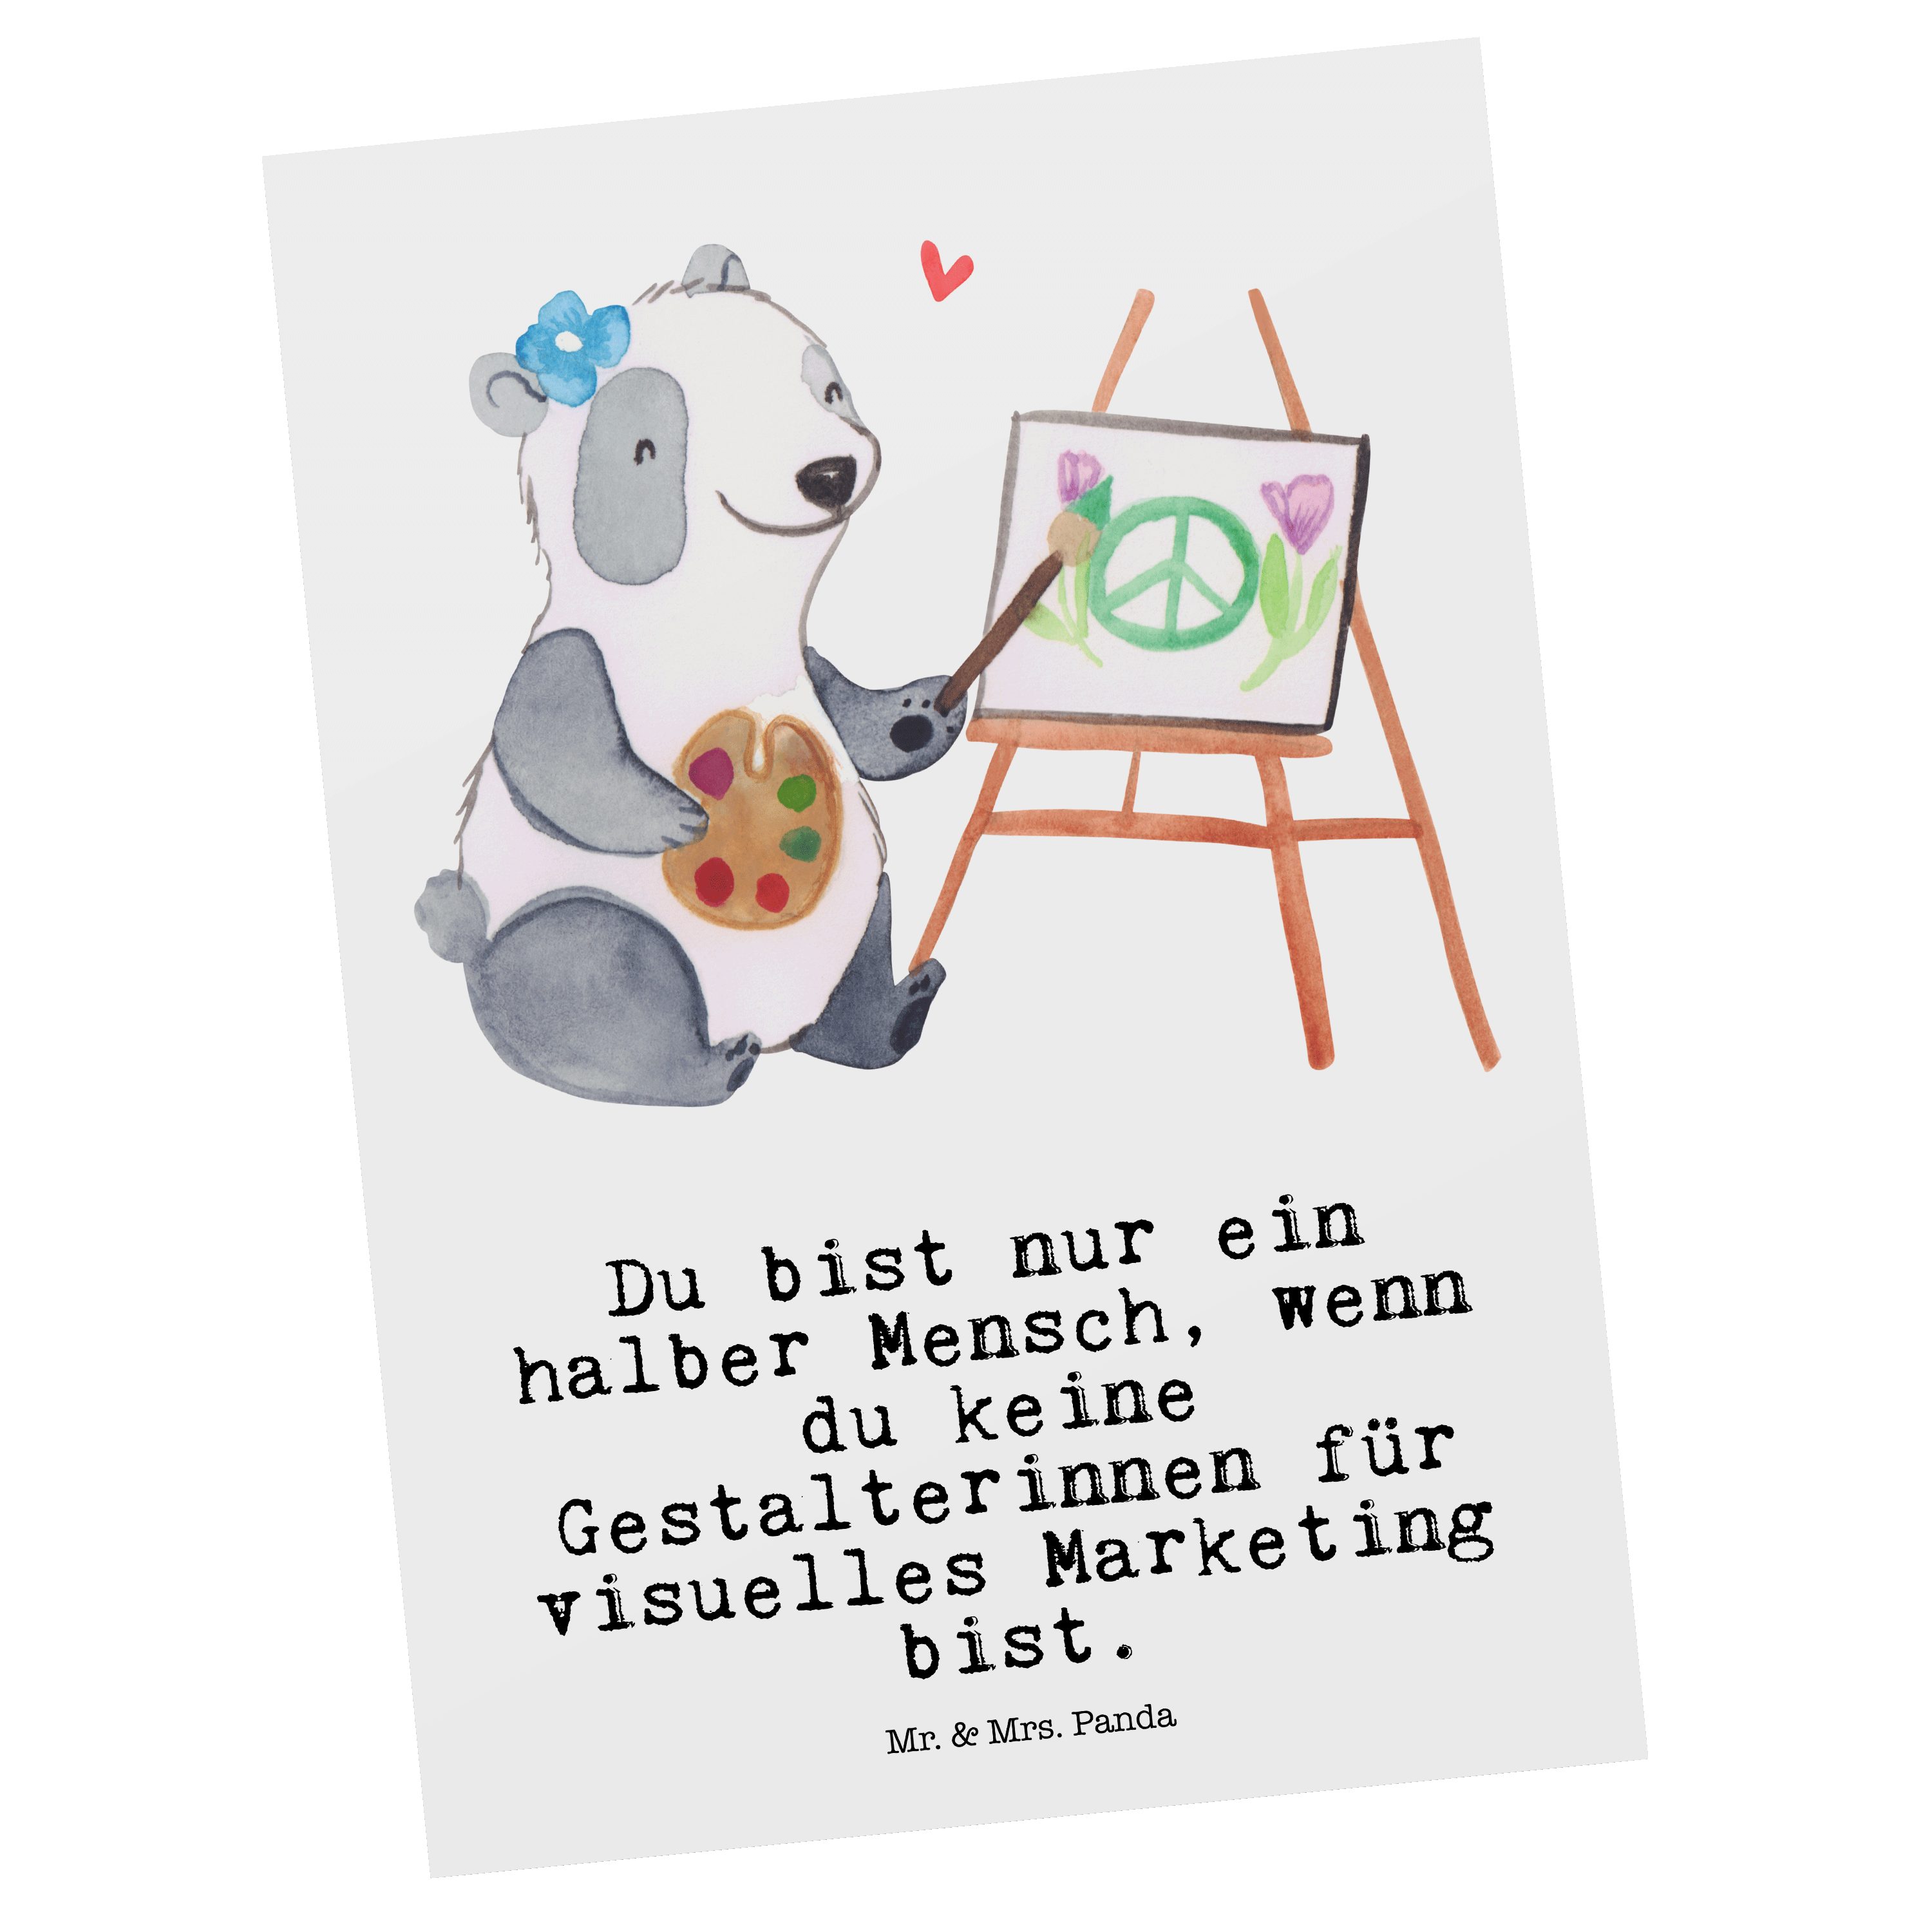 Mr. & Mrs. Panda Postkarte Gestalterinnen für visuelles Marketing mit Herz - Weiß - Geschenk, An